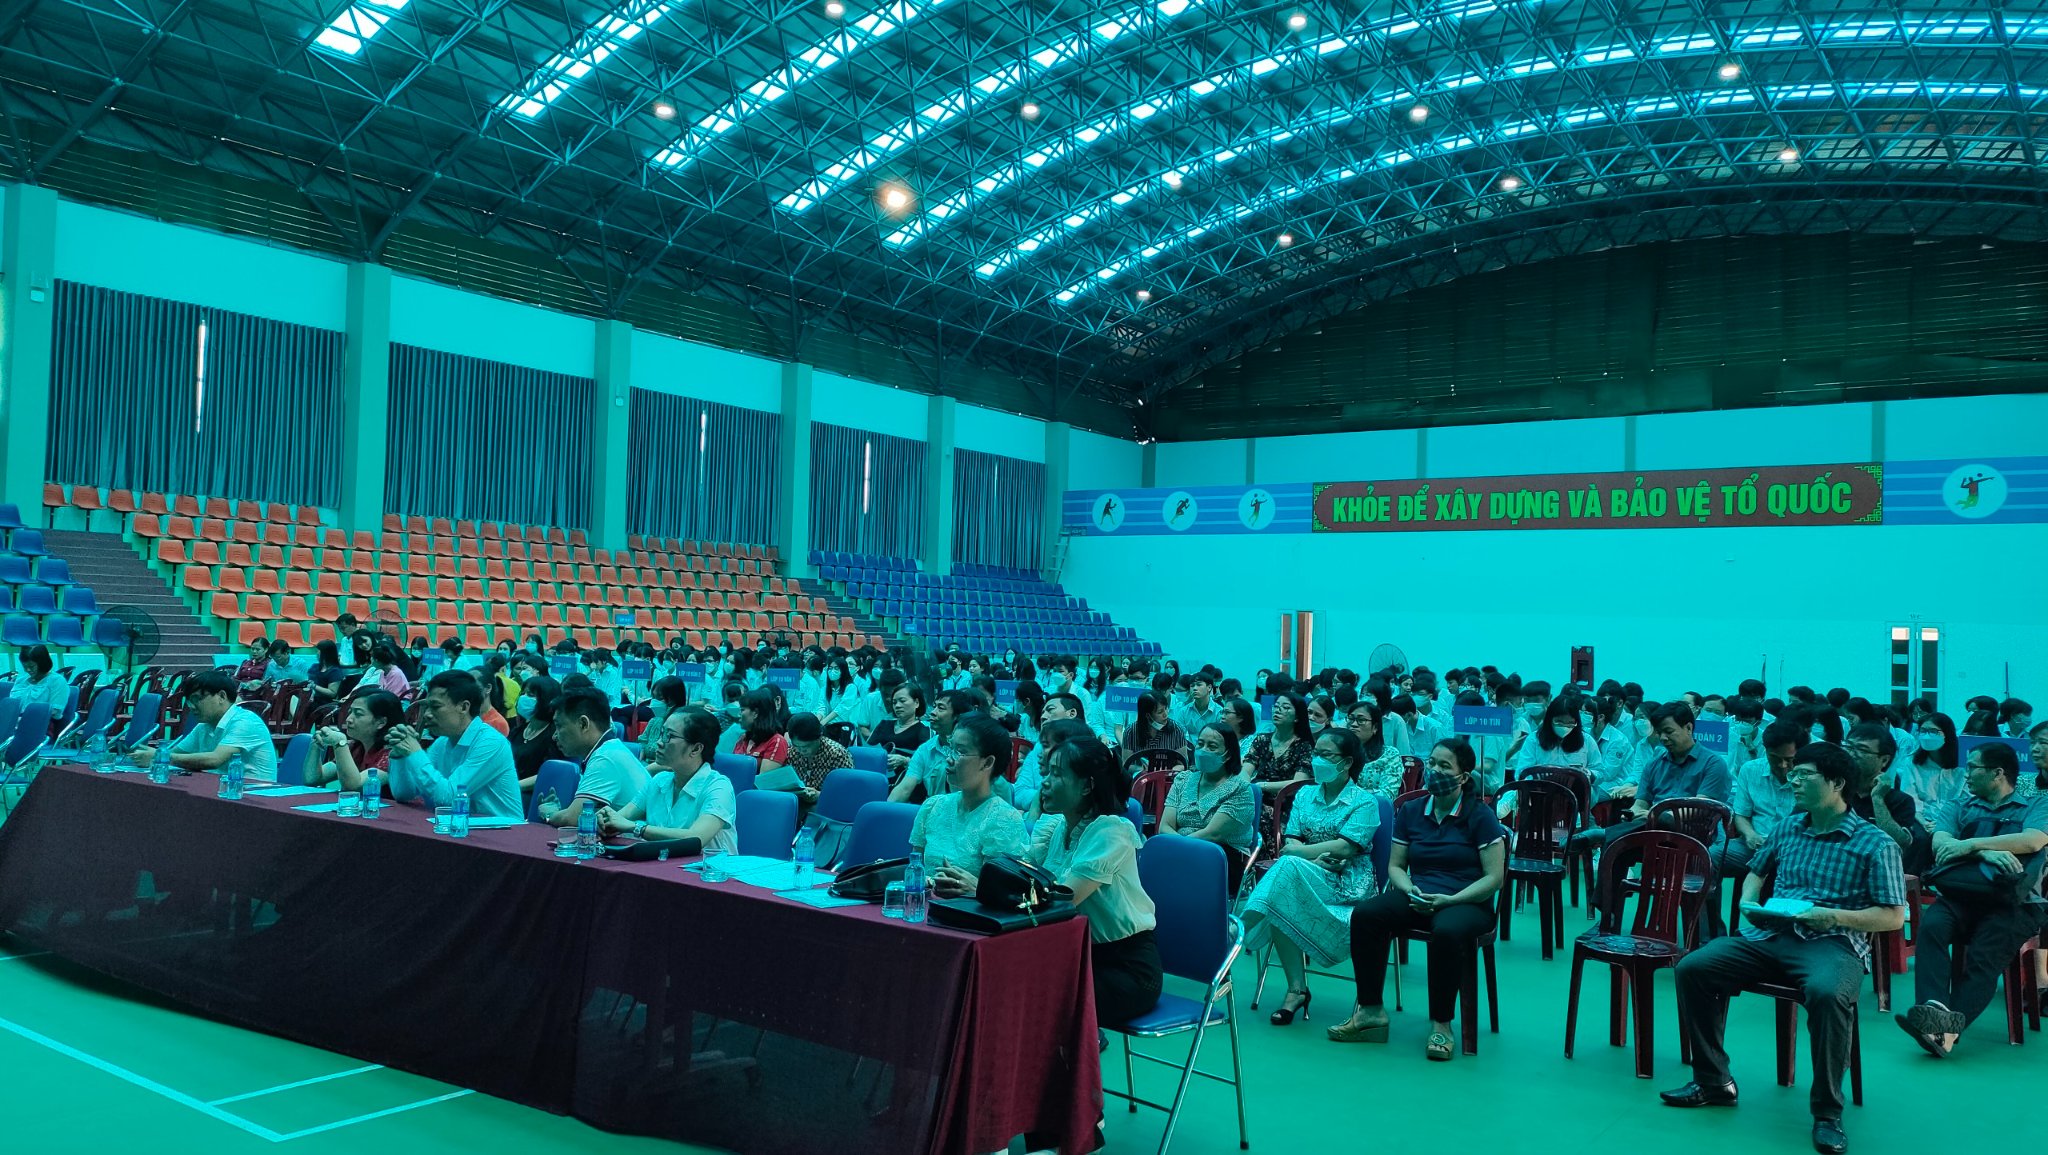 Đoàn trường THPT chuyên Lương Văn Tụy tổ chức tư vấn hướng nghiệp cho đoàn viên thanh niên